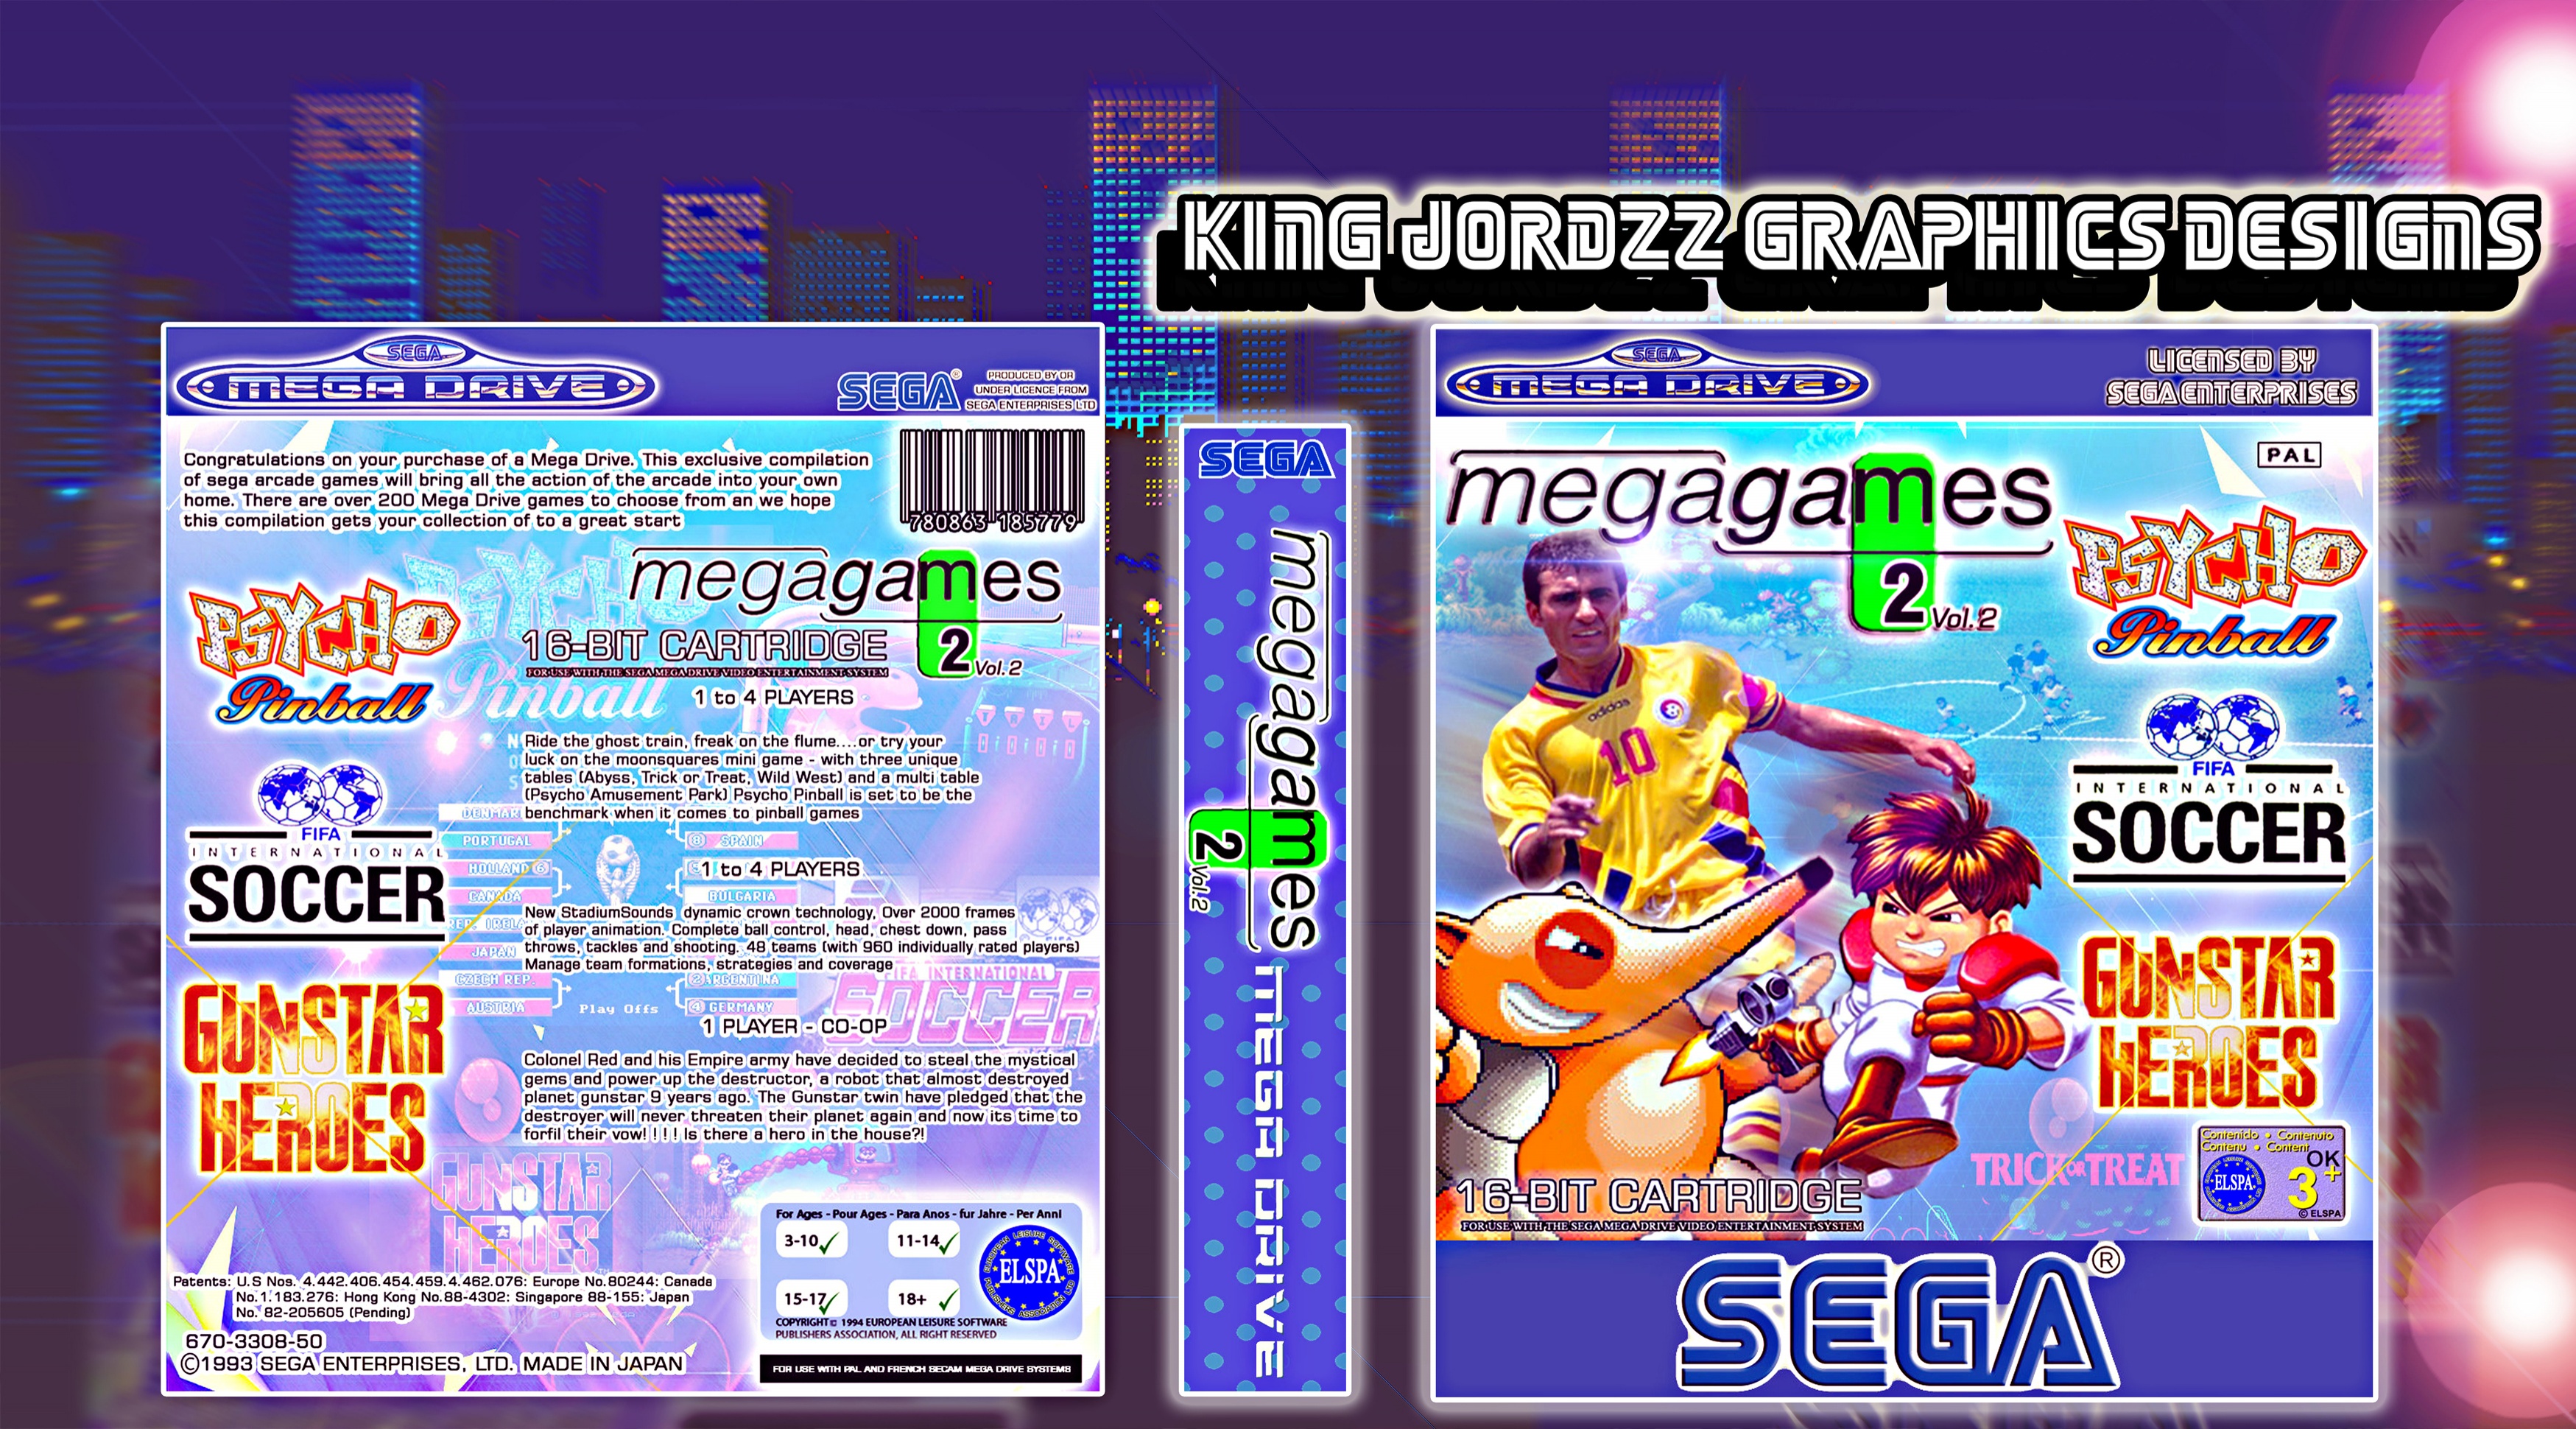 Sega: Mega Games 2 Vol.2 box cover